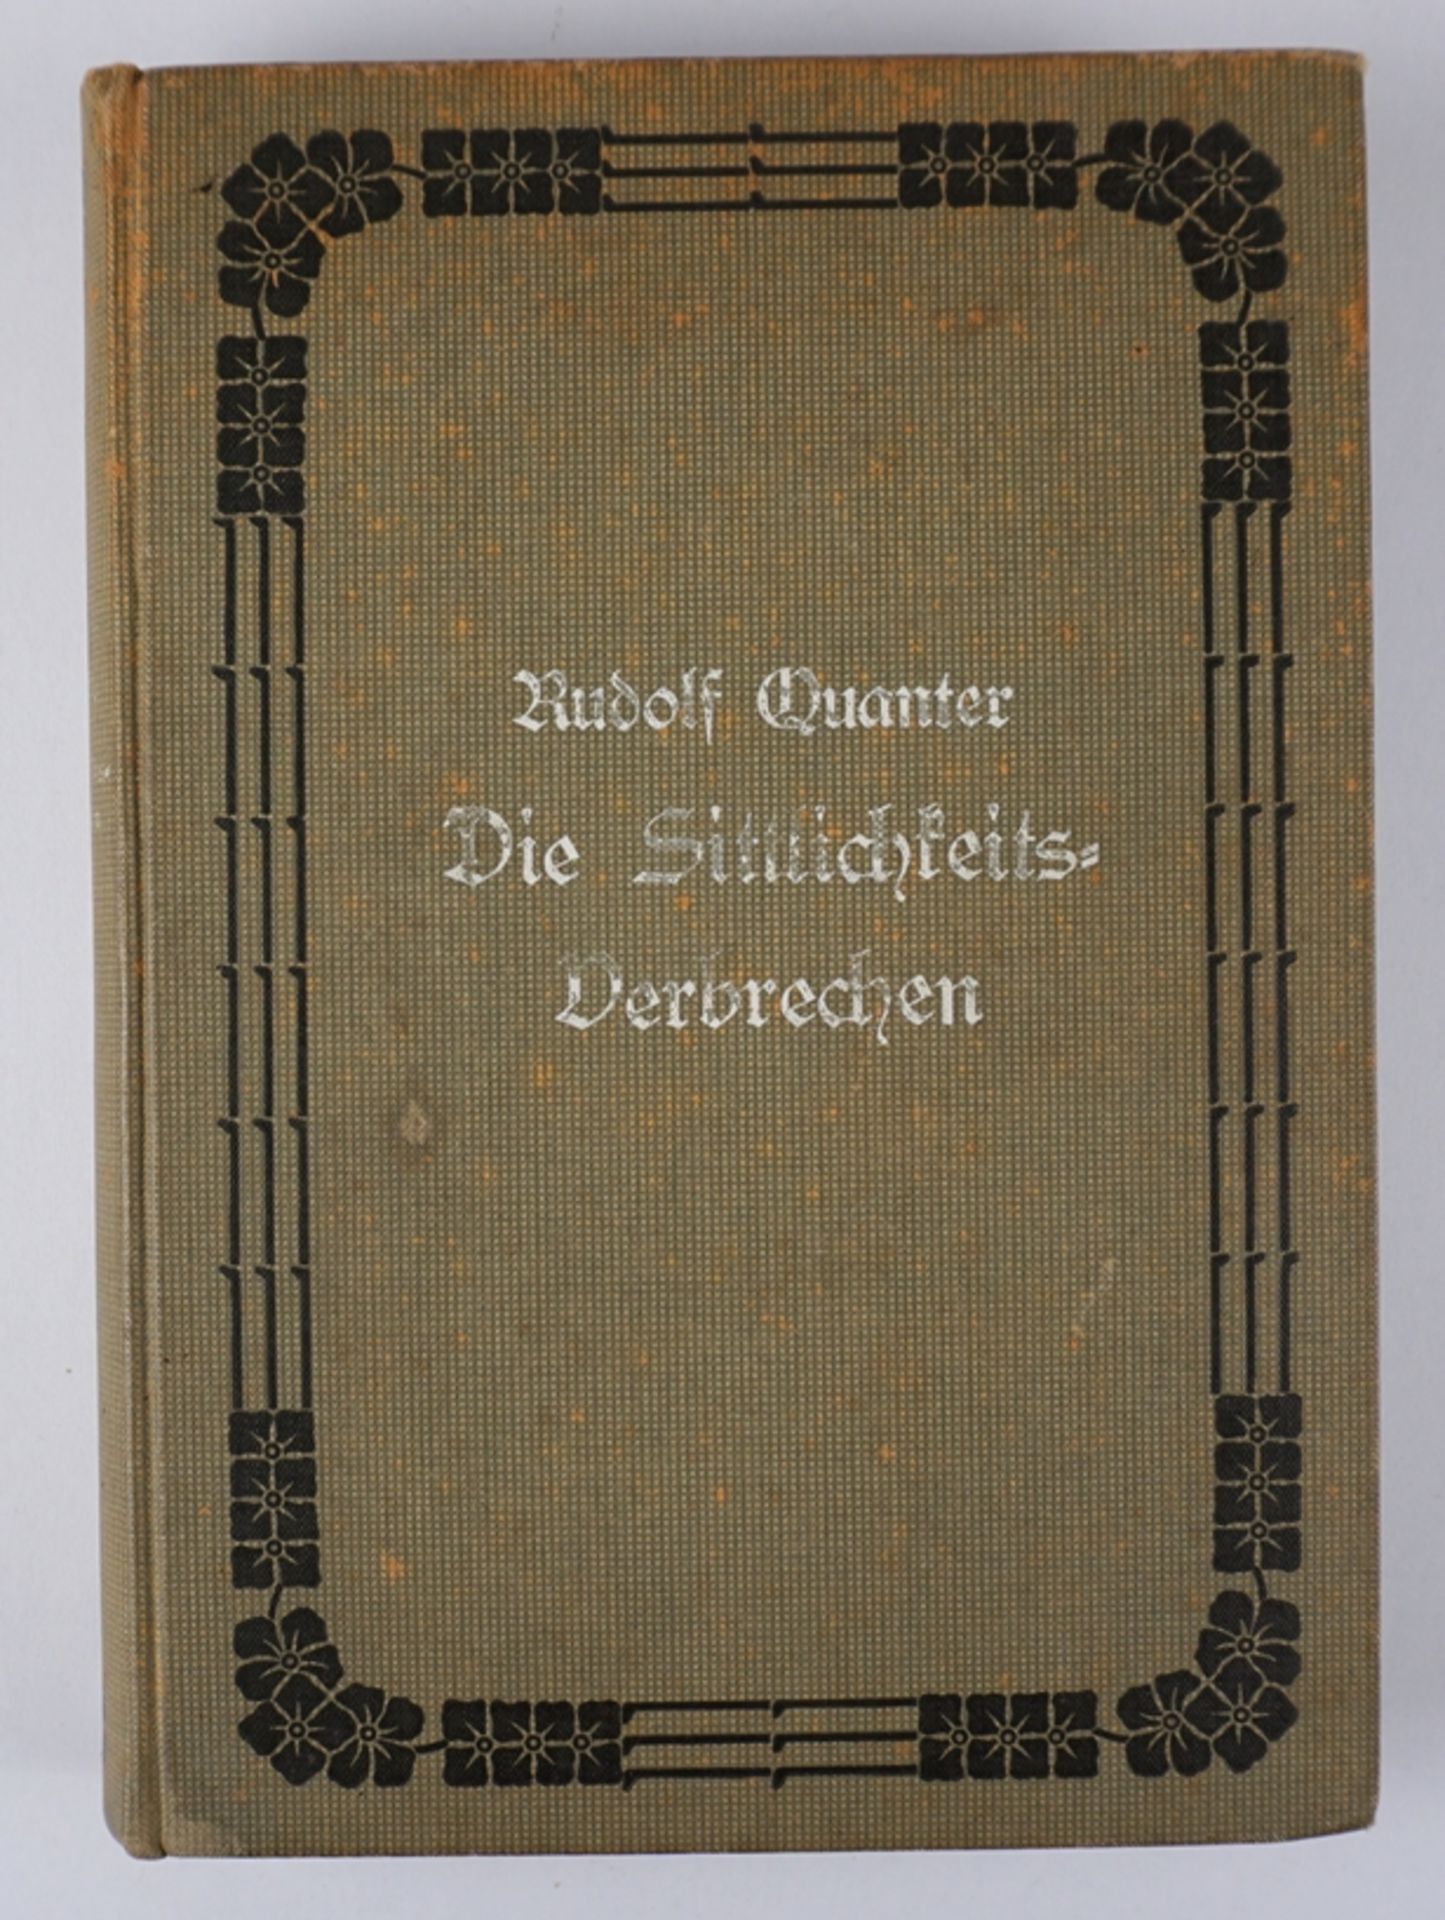 Die Sittlichkeitsverbrechen, Rudolf Quanter, Hugo Bermühler Verlag, 1904